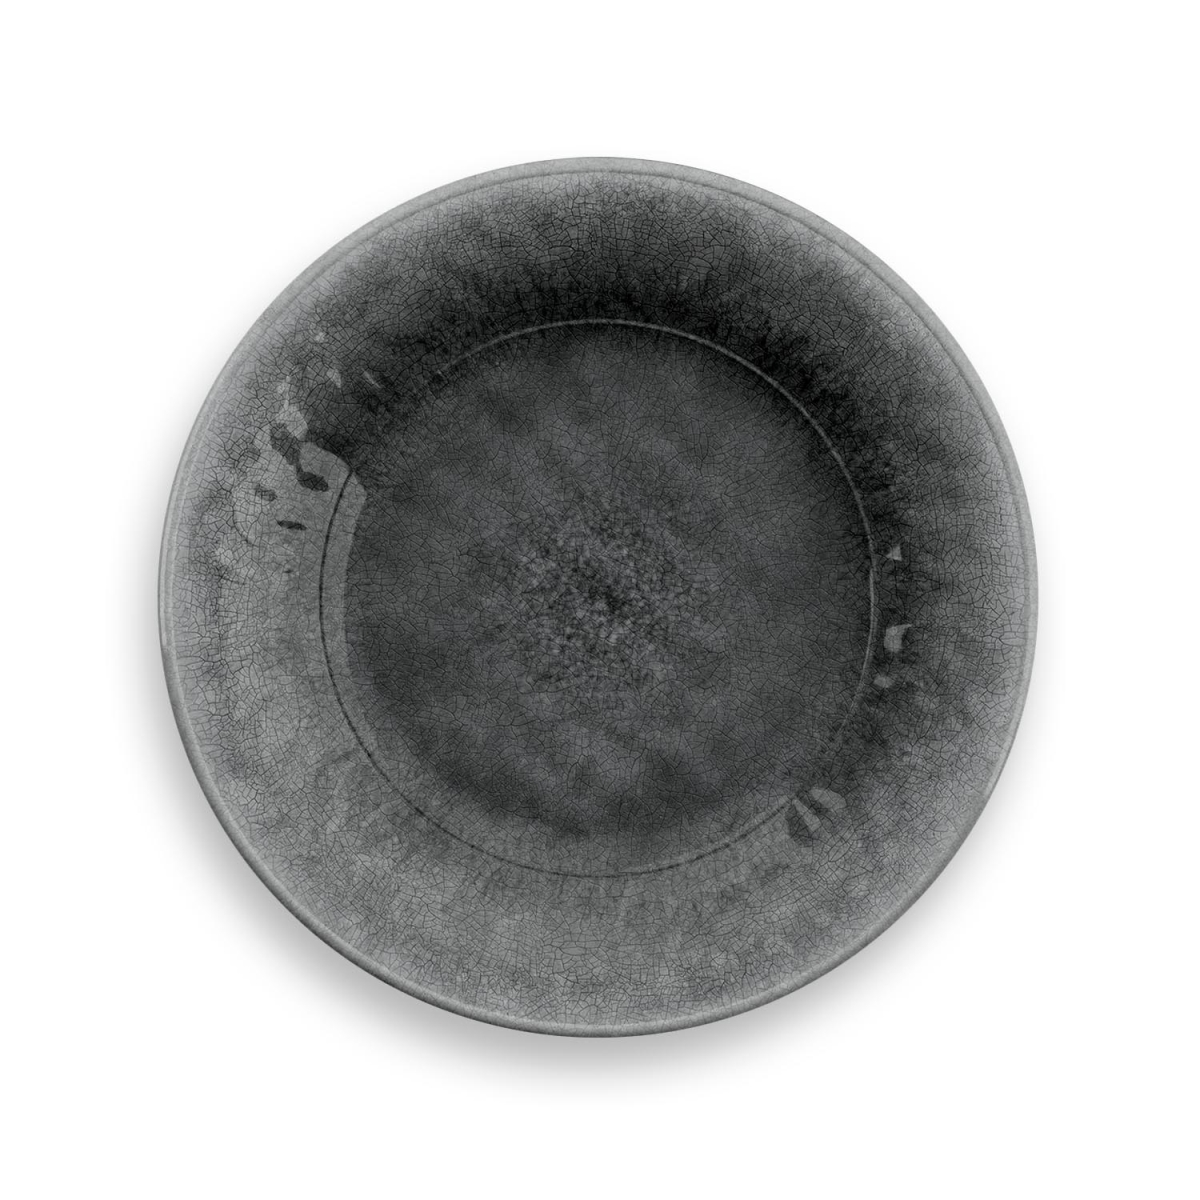 Pvl1085avspp Potters Reactive Glaze Salad Plate Heavy Mold, Set Of 6 - Grey